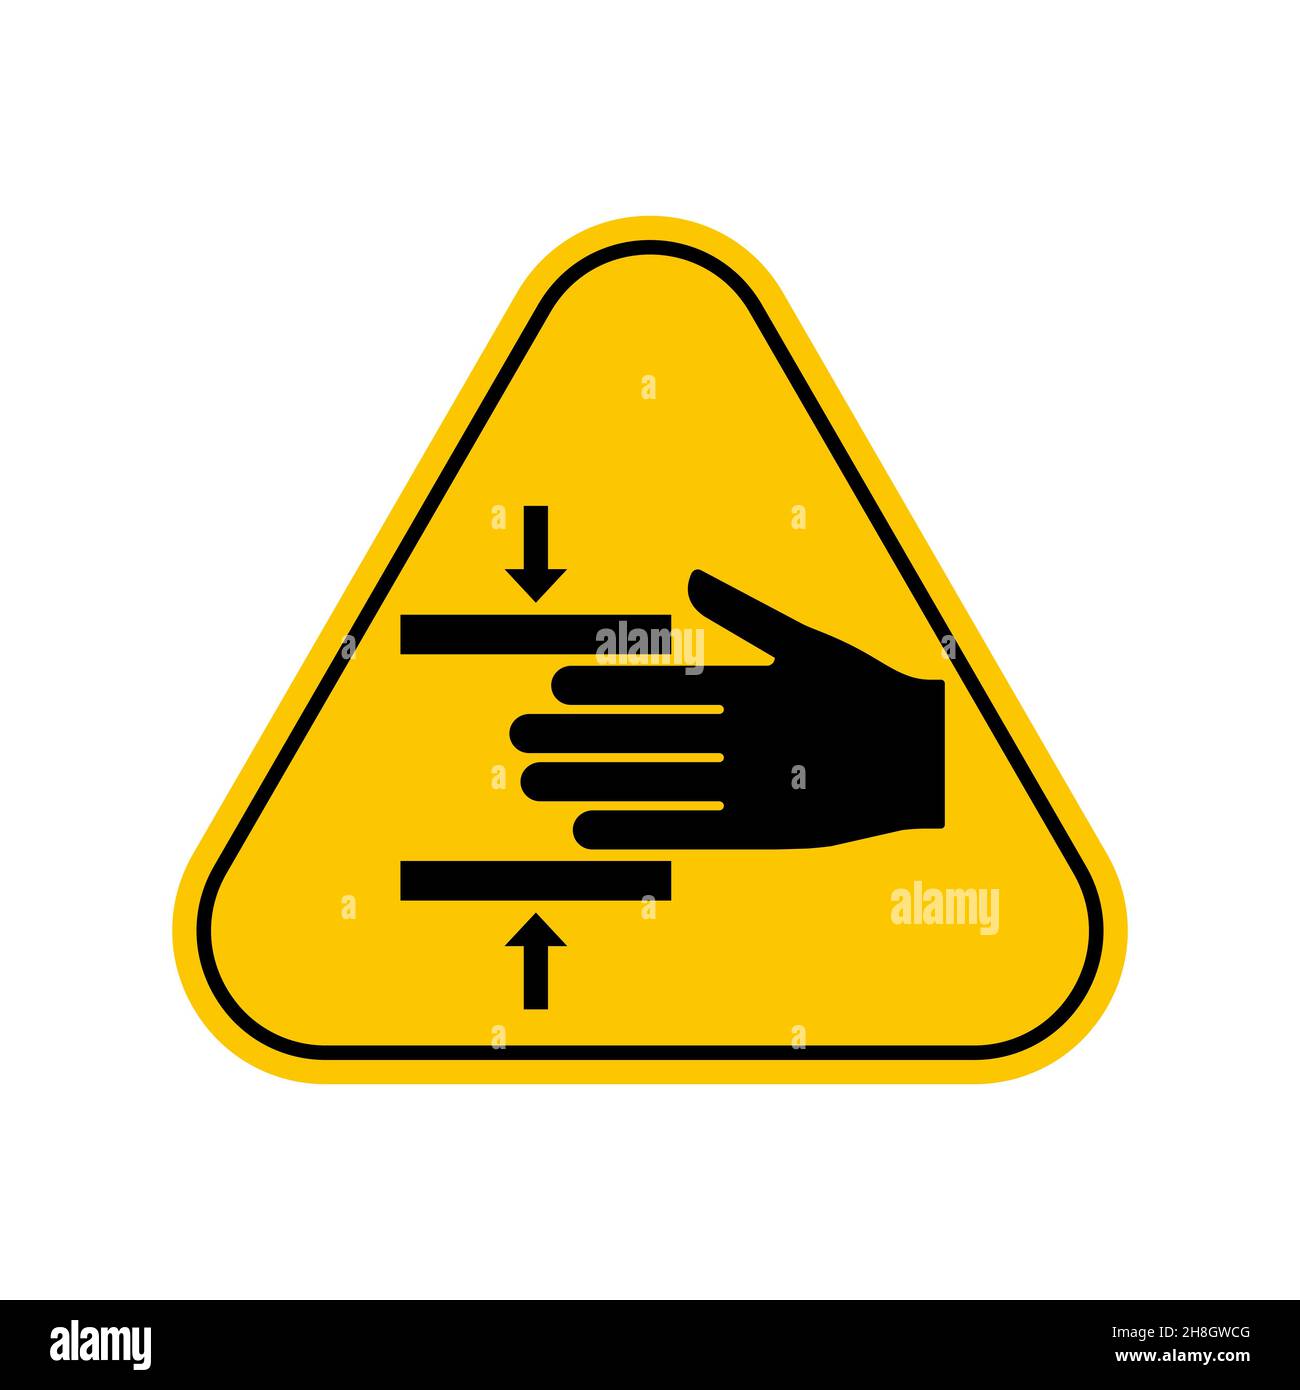 Simbolo di pericolo di schiacciamento. Forza di schiacciamento della mano da sopra simbolo segno, simbolo di attenzione triangolo giallo, isolato su sfondo bianco, icona vettoriale Illustrazione Vettoriale